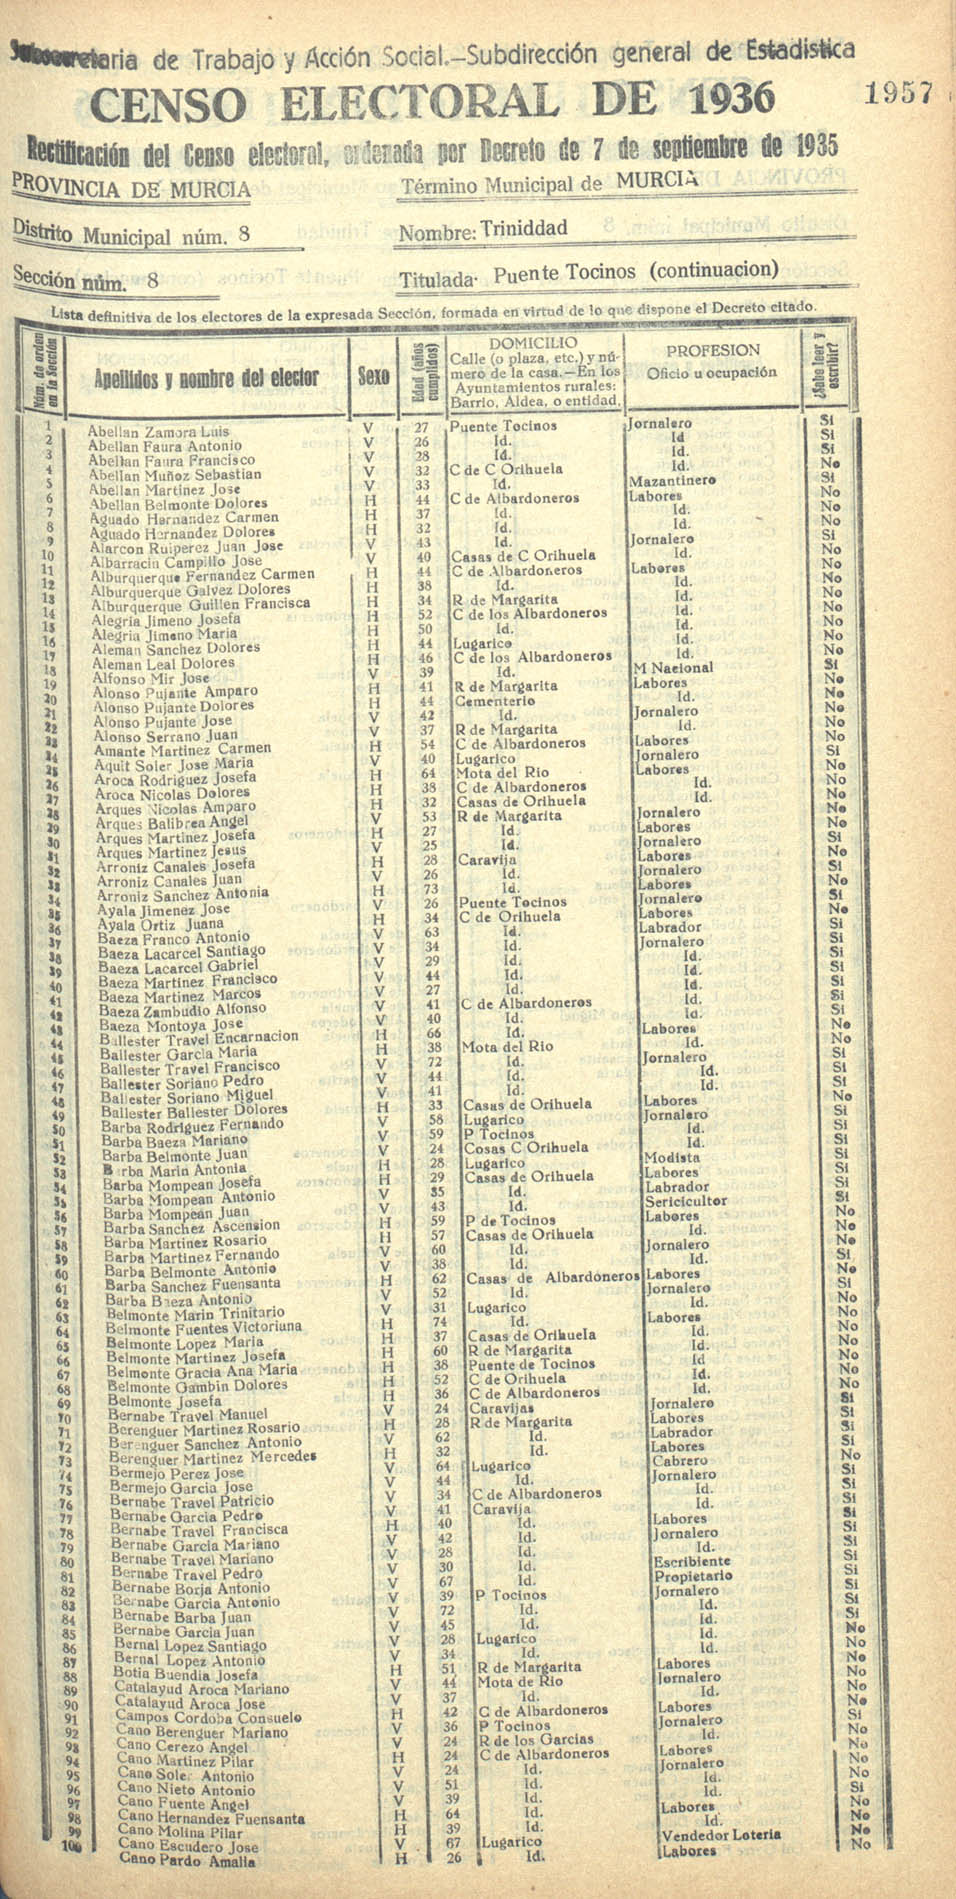 Censo electoral provincial de 1936. Murcia. Distrito 8º, Trinidad. Sección 8ª, Puente Tocinos (continuación)